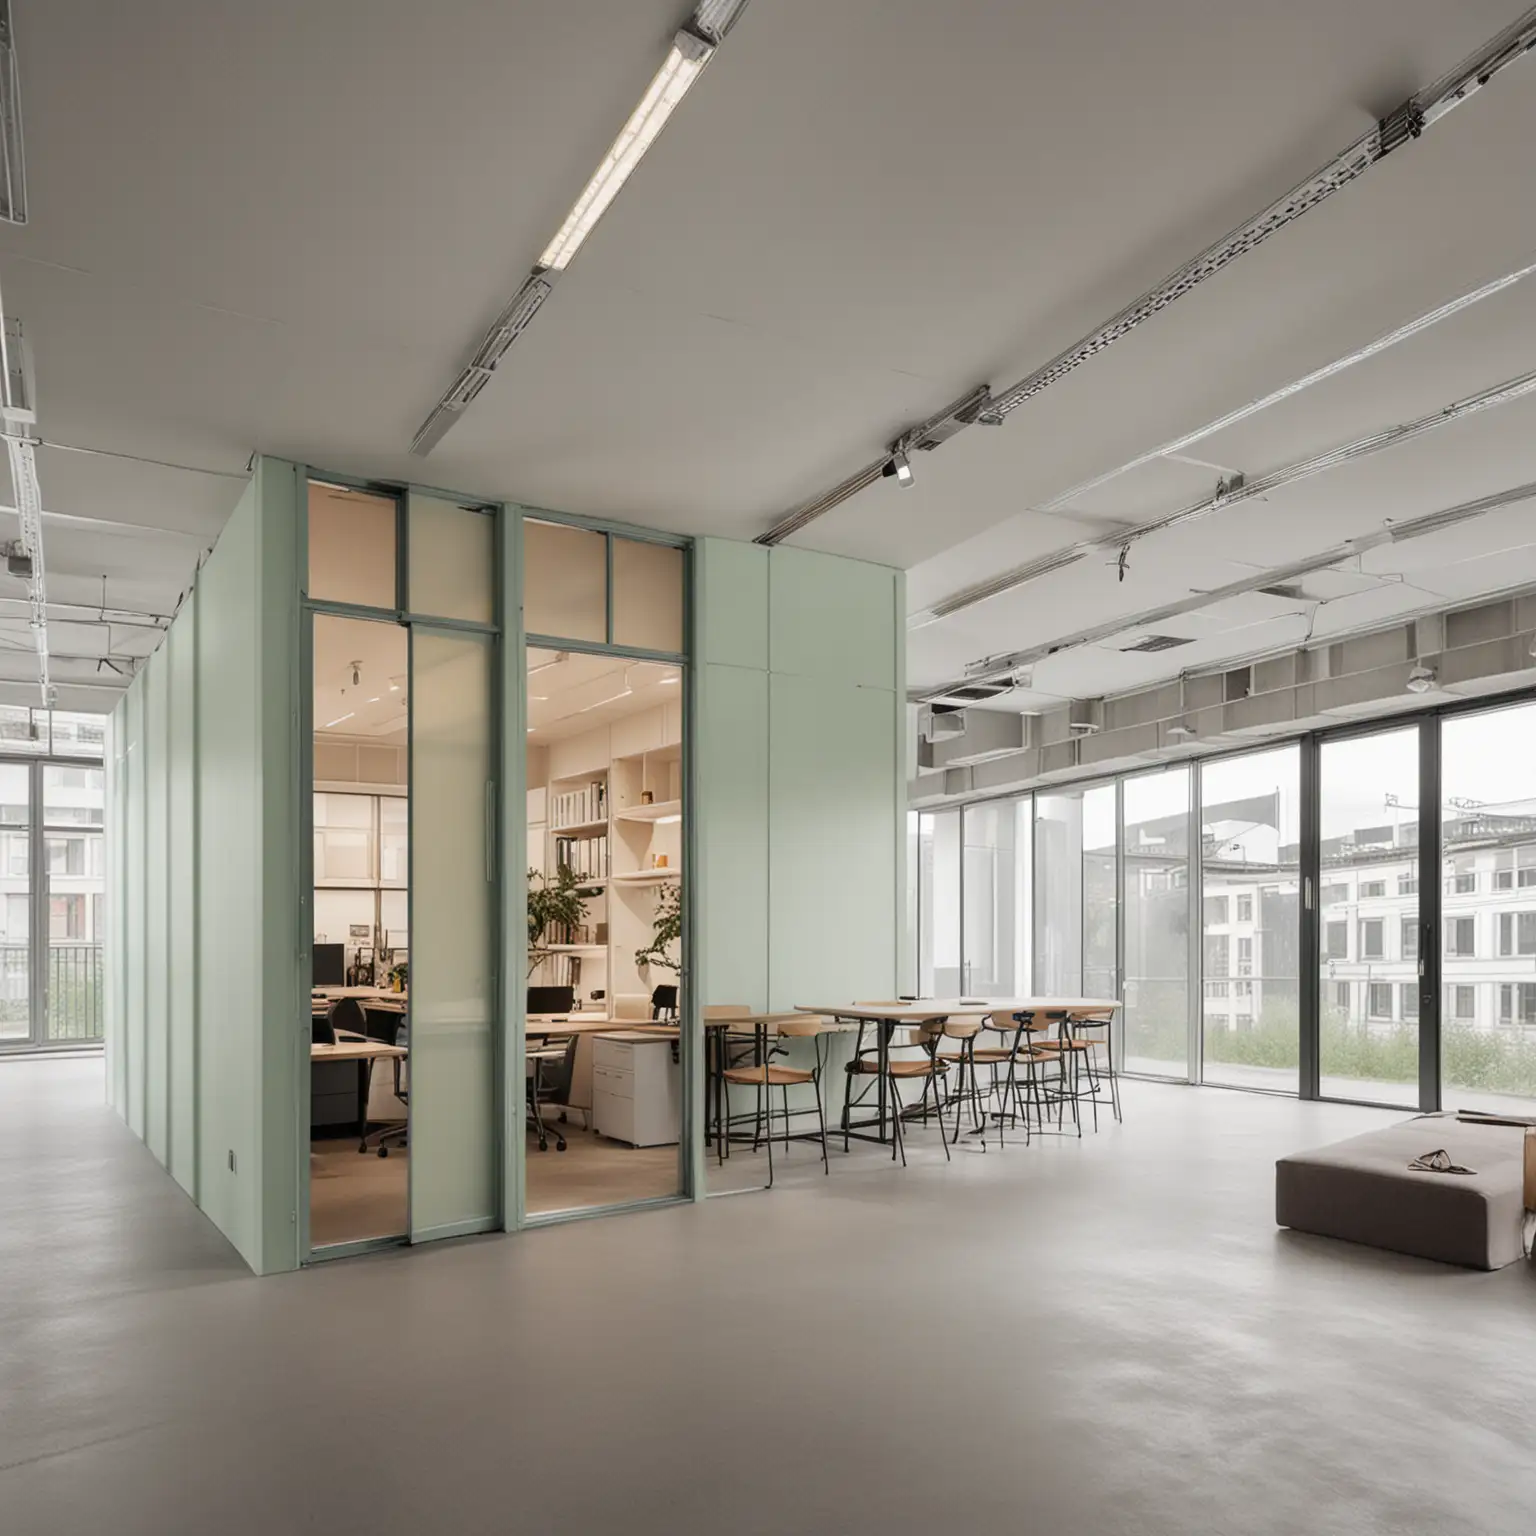 Modulares Raum in Raum System eines designer office, nach oben hin geschlossen, rechteckiger Pavillon, freundliche Farbstimmung,  heller offener Raum und rahmenlose Fenster  